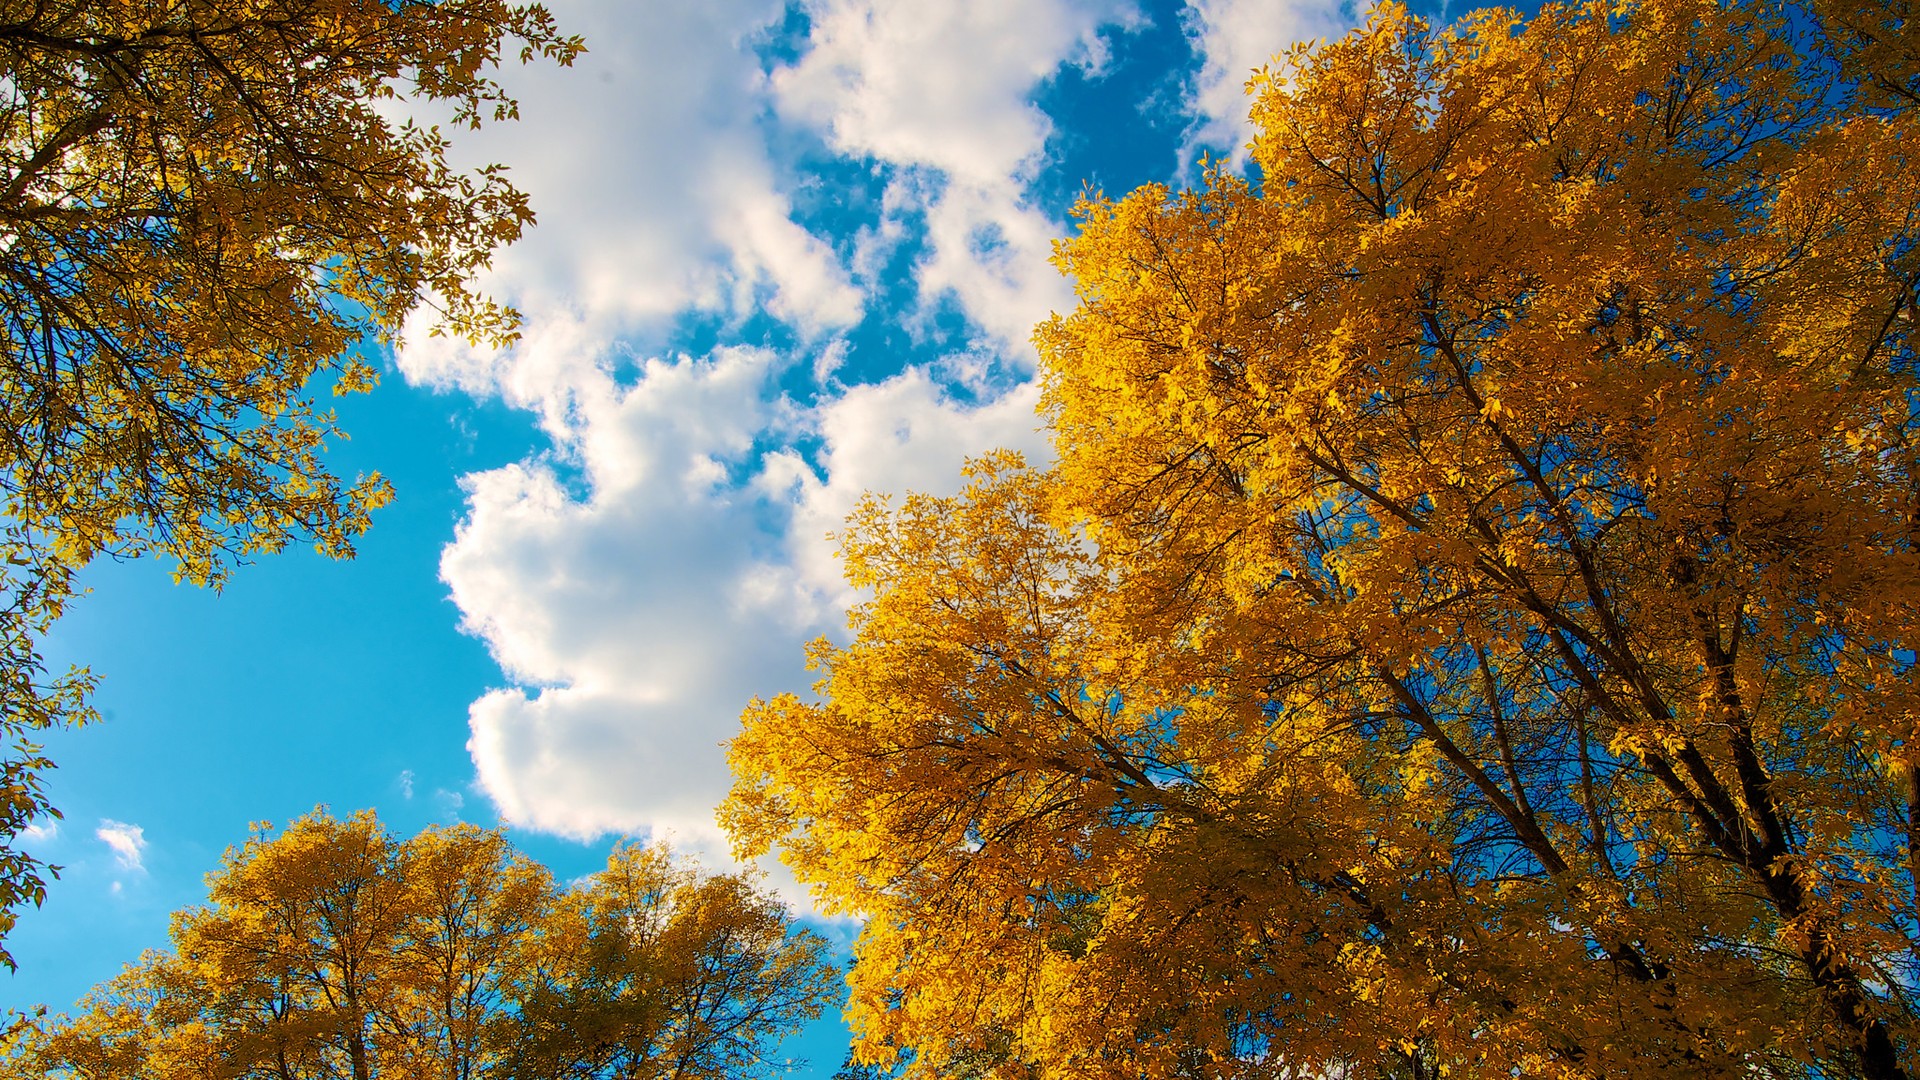 秋天的天空,云,树,树叶,自然风景壁纸